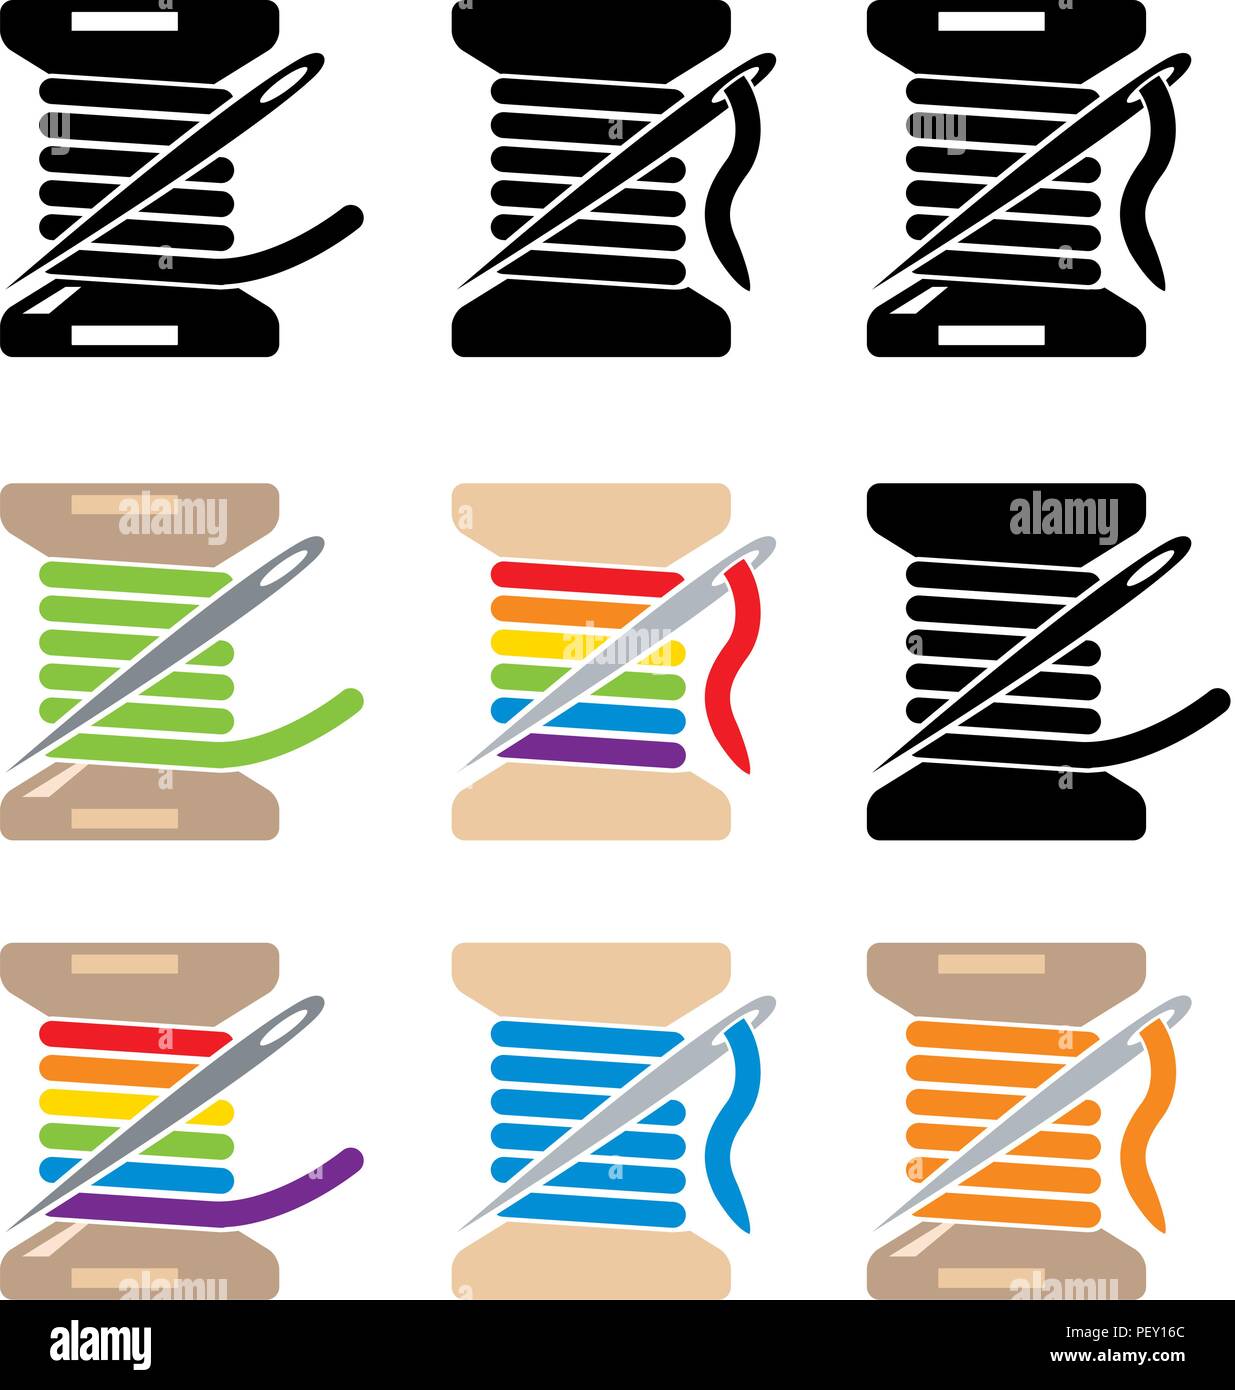 Vektor Schieber Symbole Nähen mit Nadel und Faden auf weißem Hintergrund.  Handarbeit Handwerk Symbole Stock-Vektorgrafik - Alamy